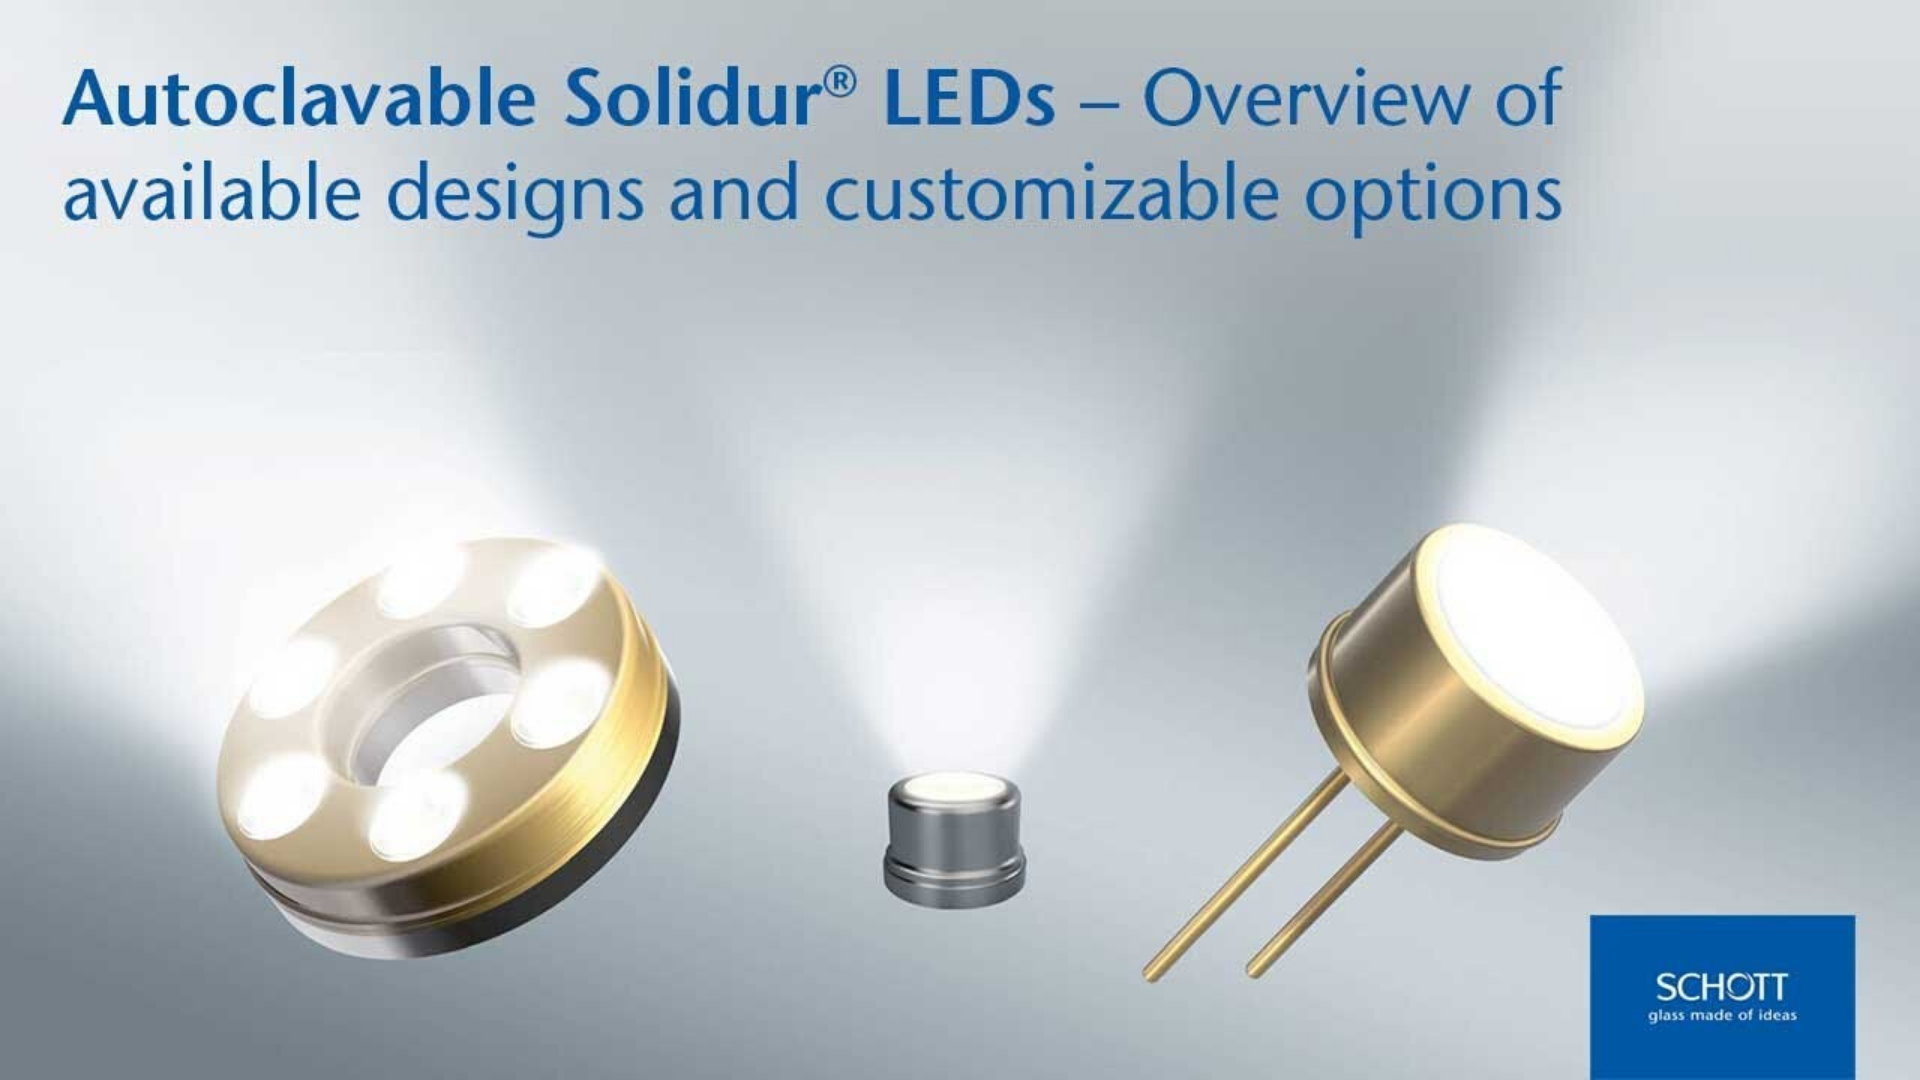 Clique para saber mais sobre a variedade de LEDs autoclaváveis SCHOTT Solidur® e suas opções personalizáveis